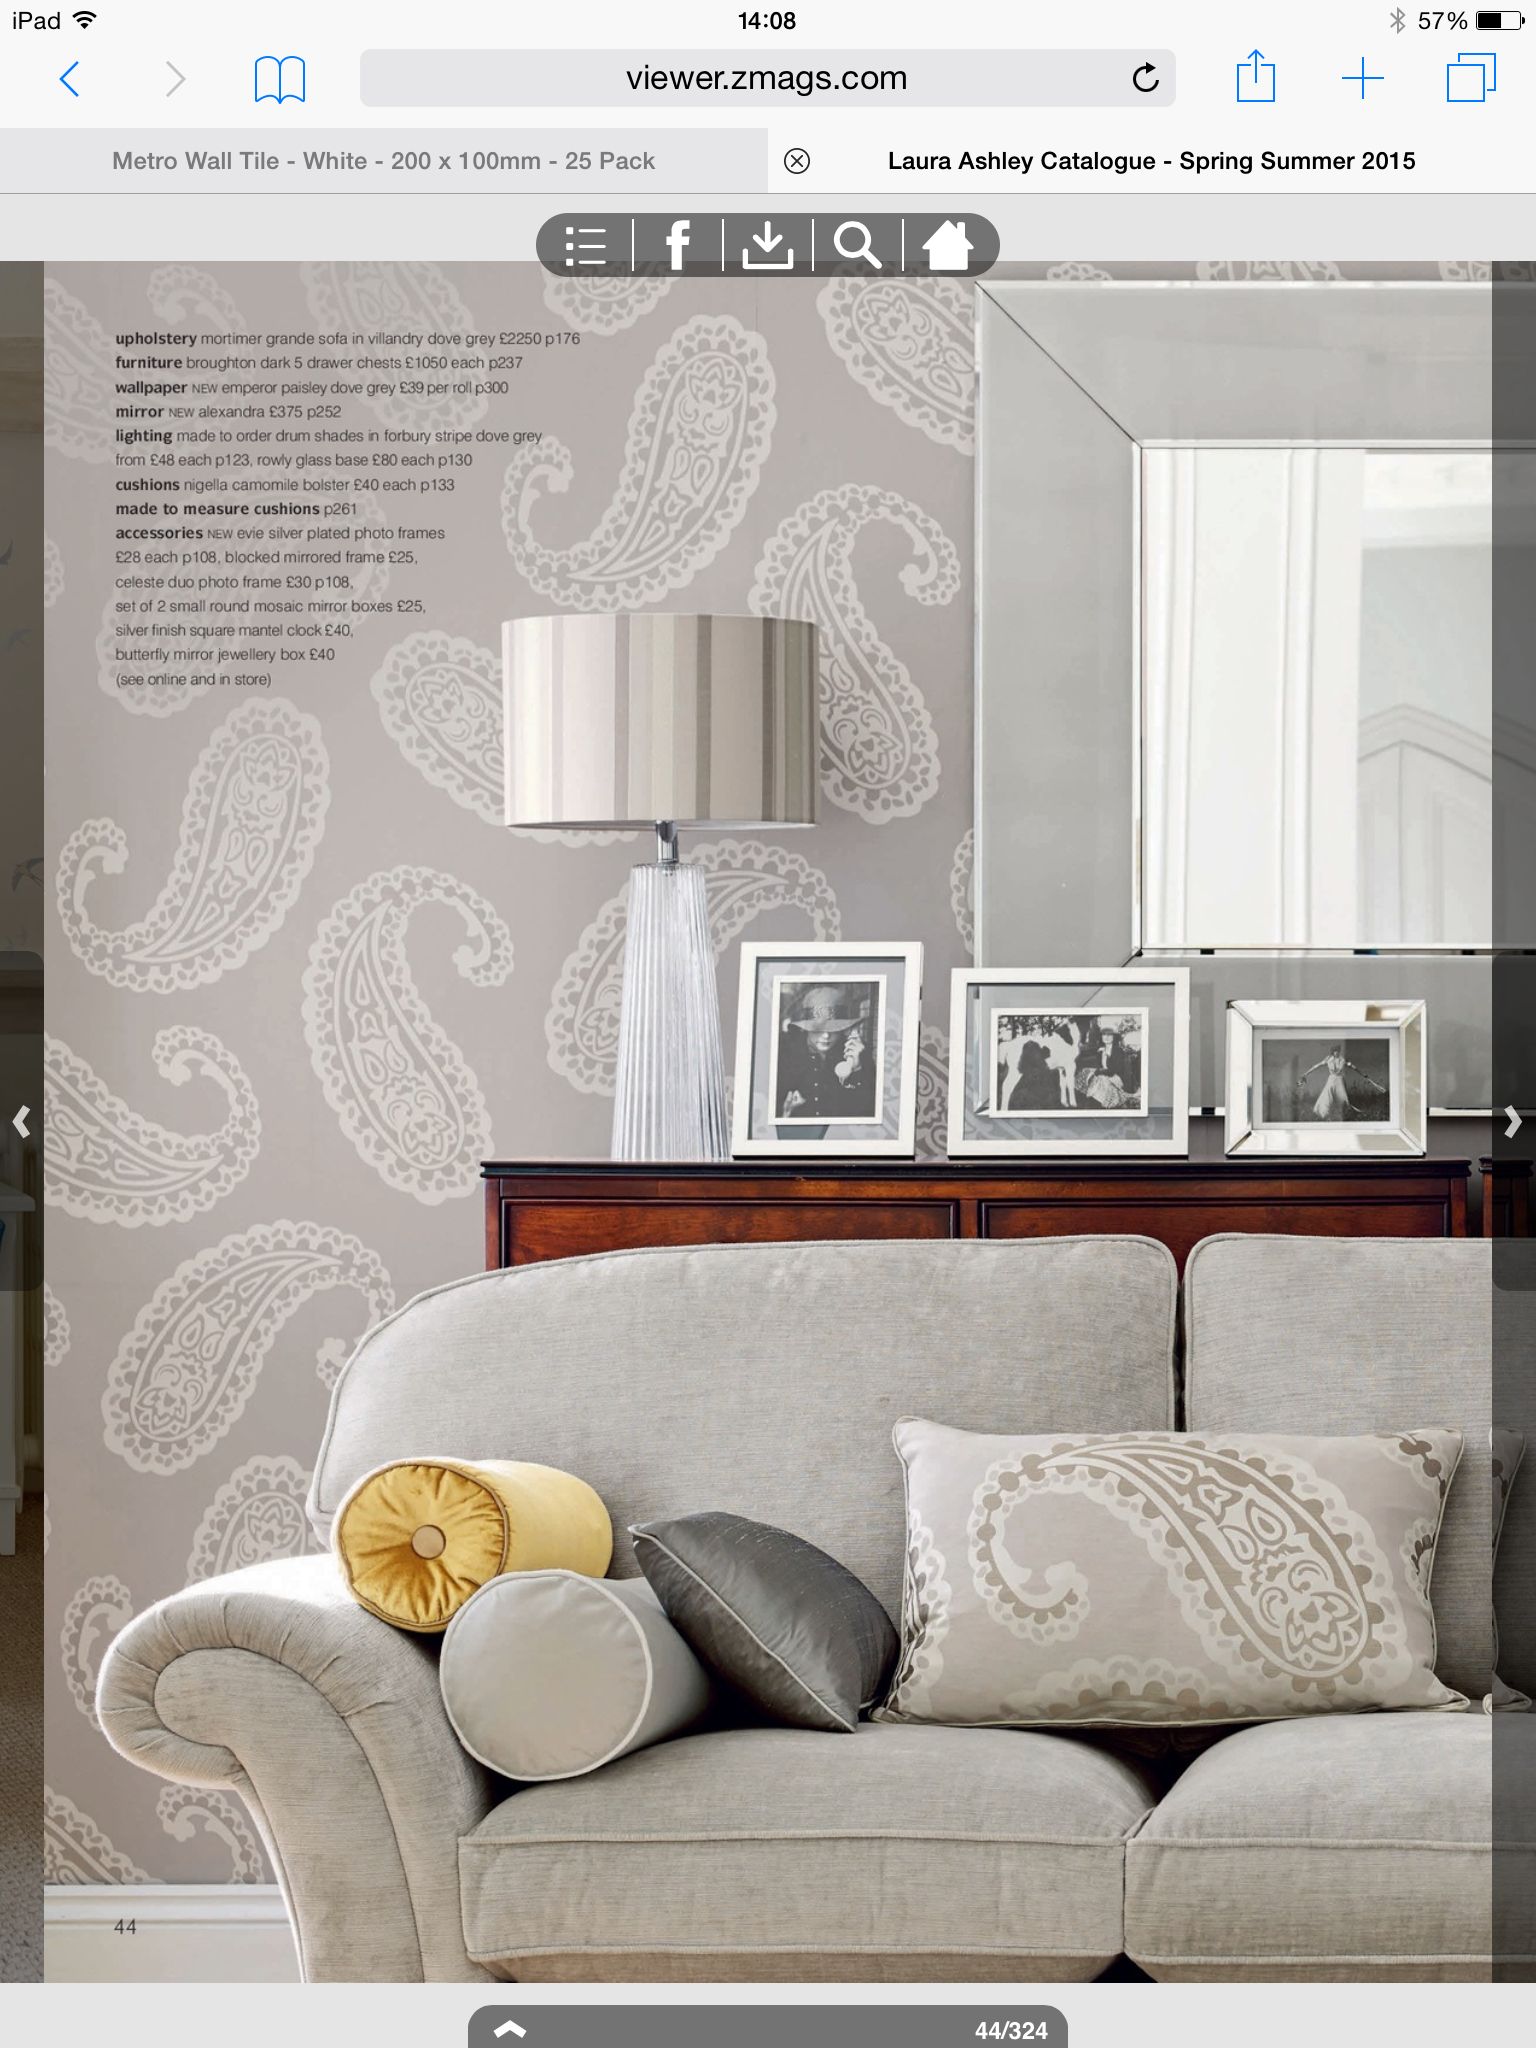 로라 애슐리 페이즐리 바탕 화면,가구,인테리어 디자인,방,거실,침상